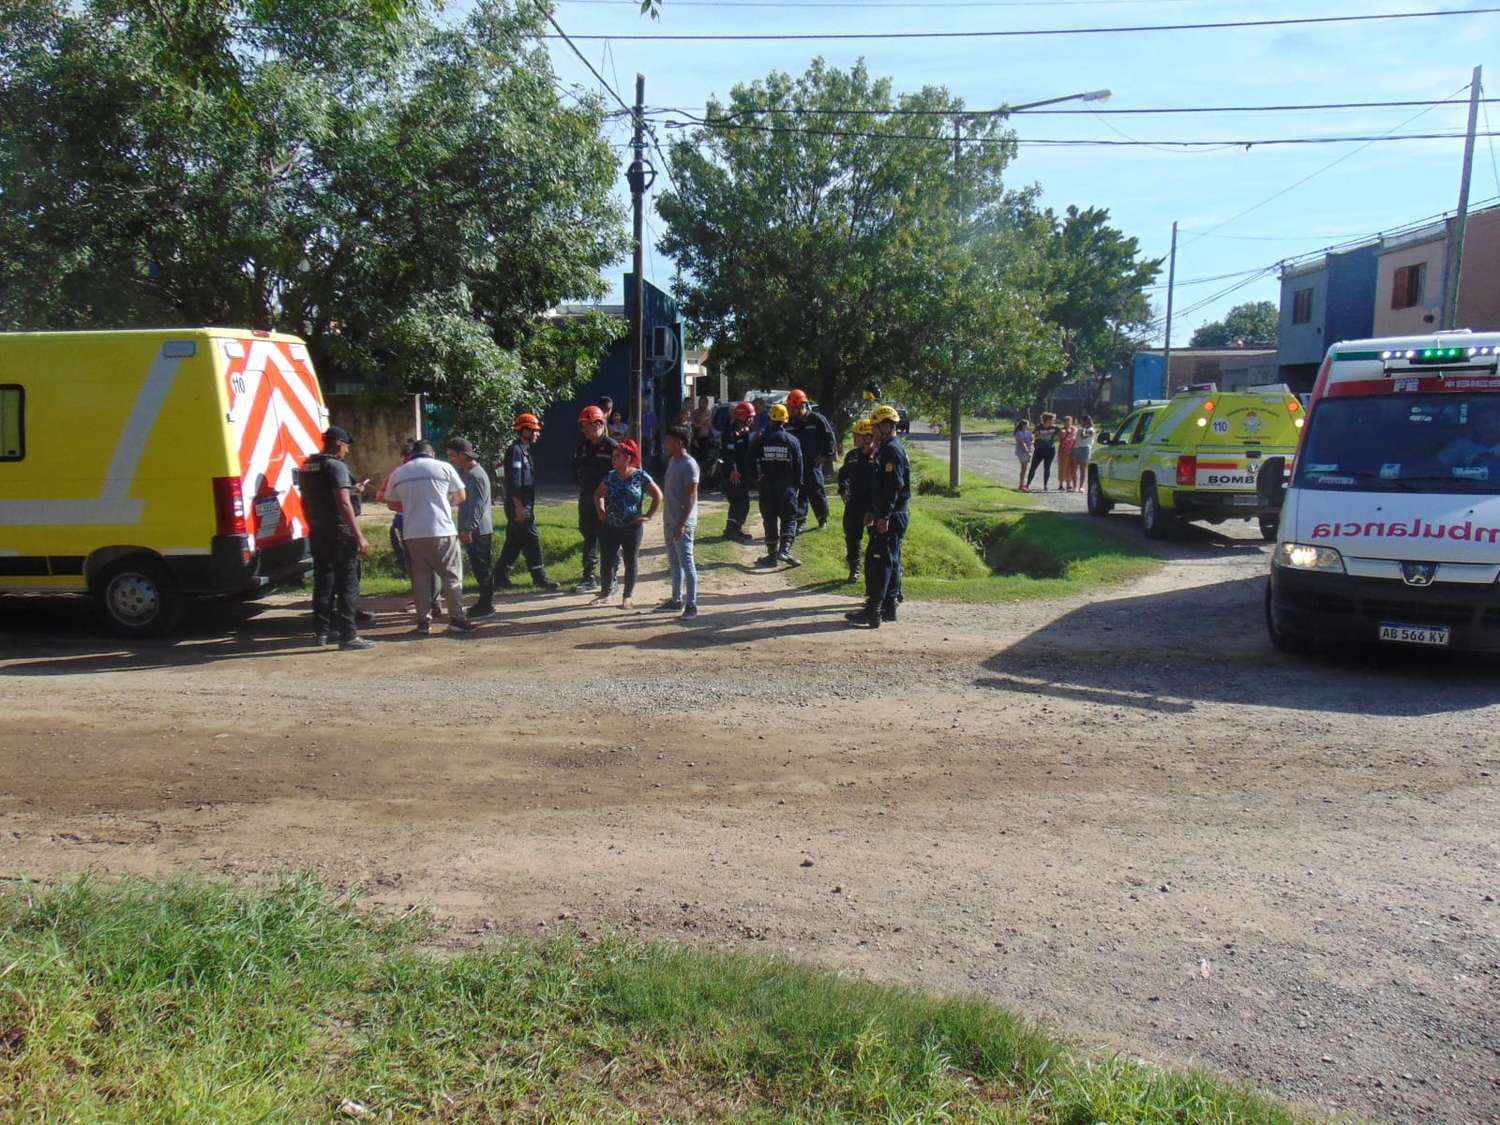 Los servicios de emergencias acudieron en auxilio de las personas accidentadas. Foto: Bomberos Voluntarios de Venado Tuerto